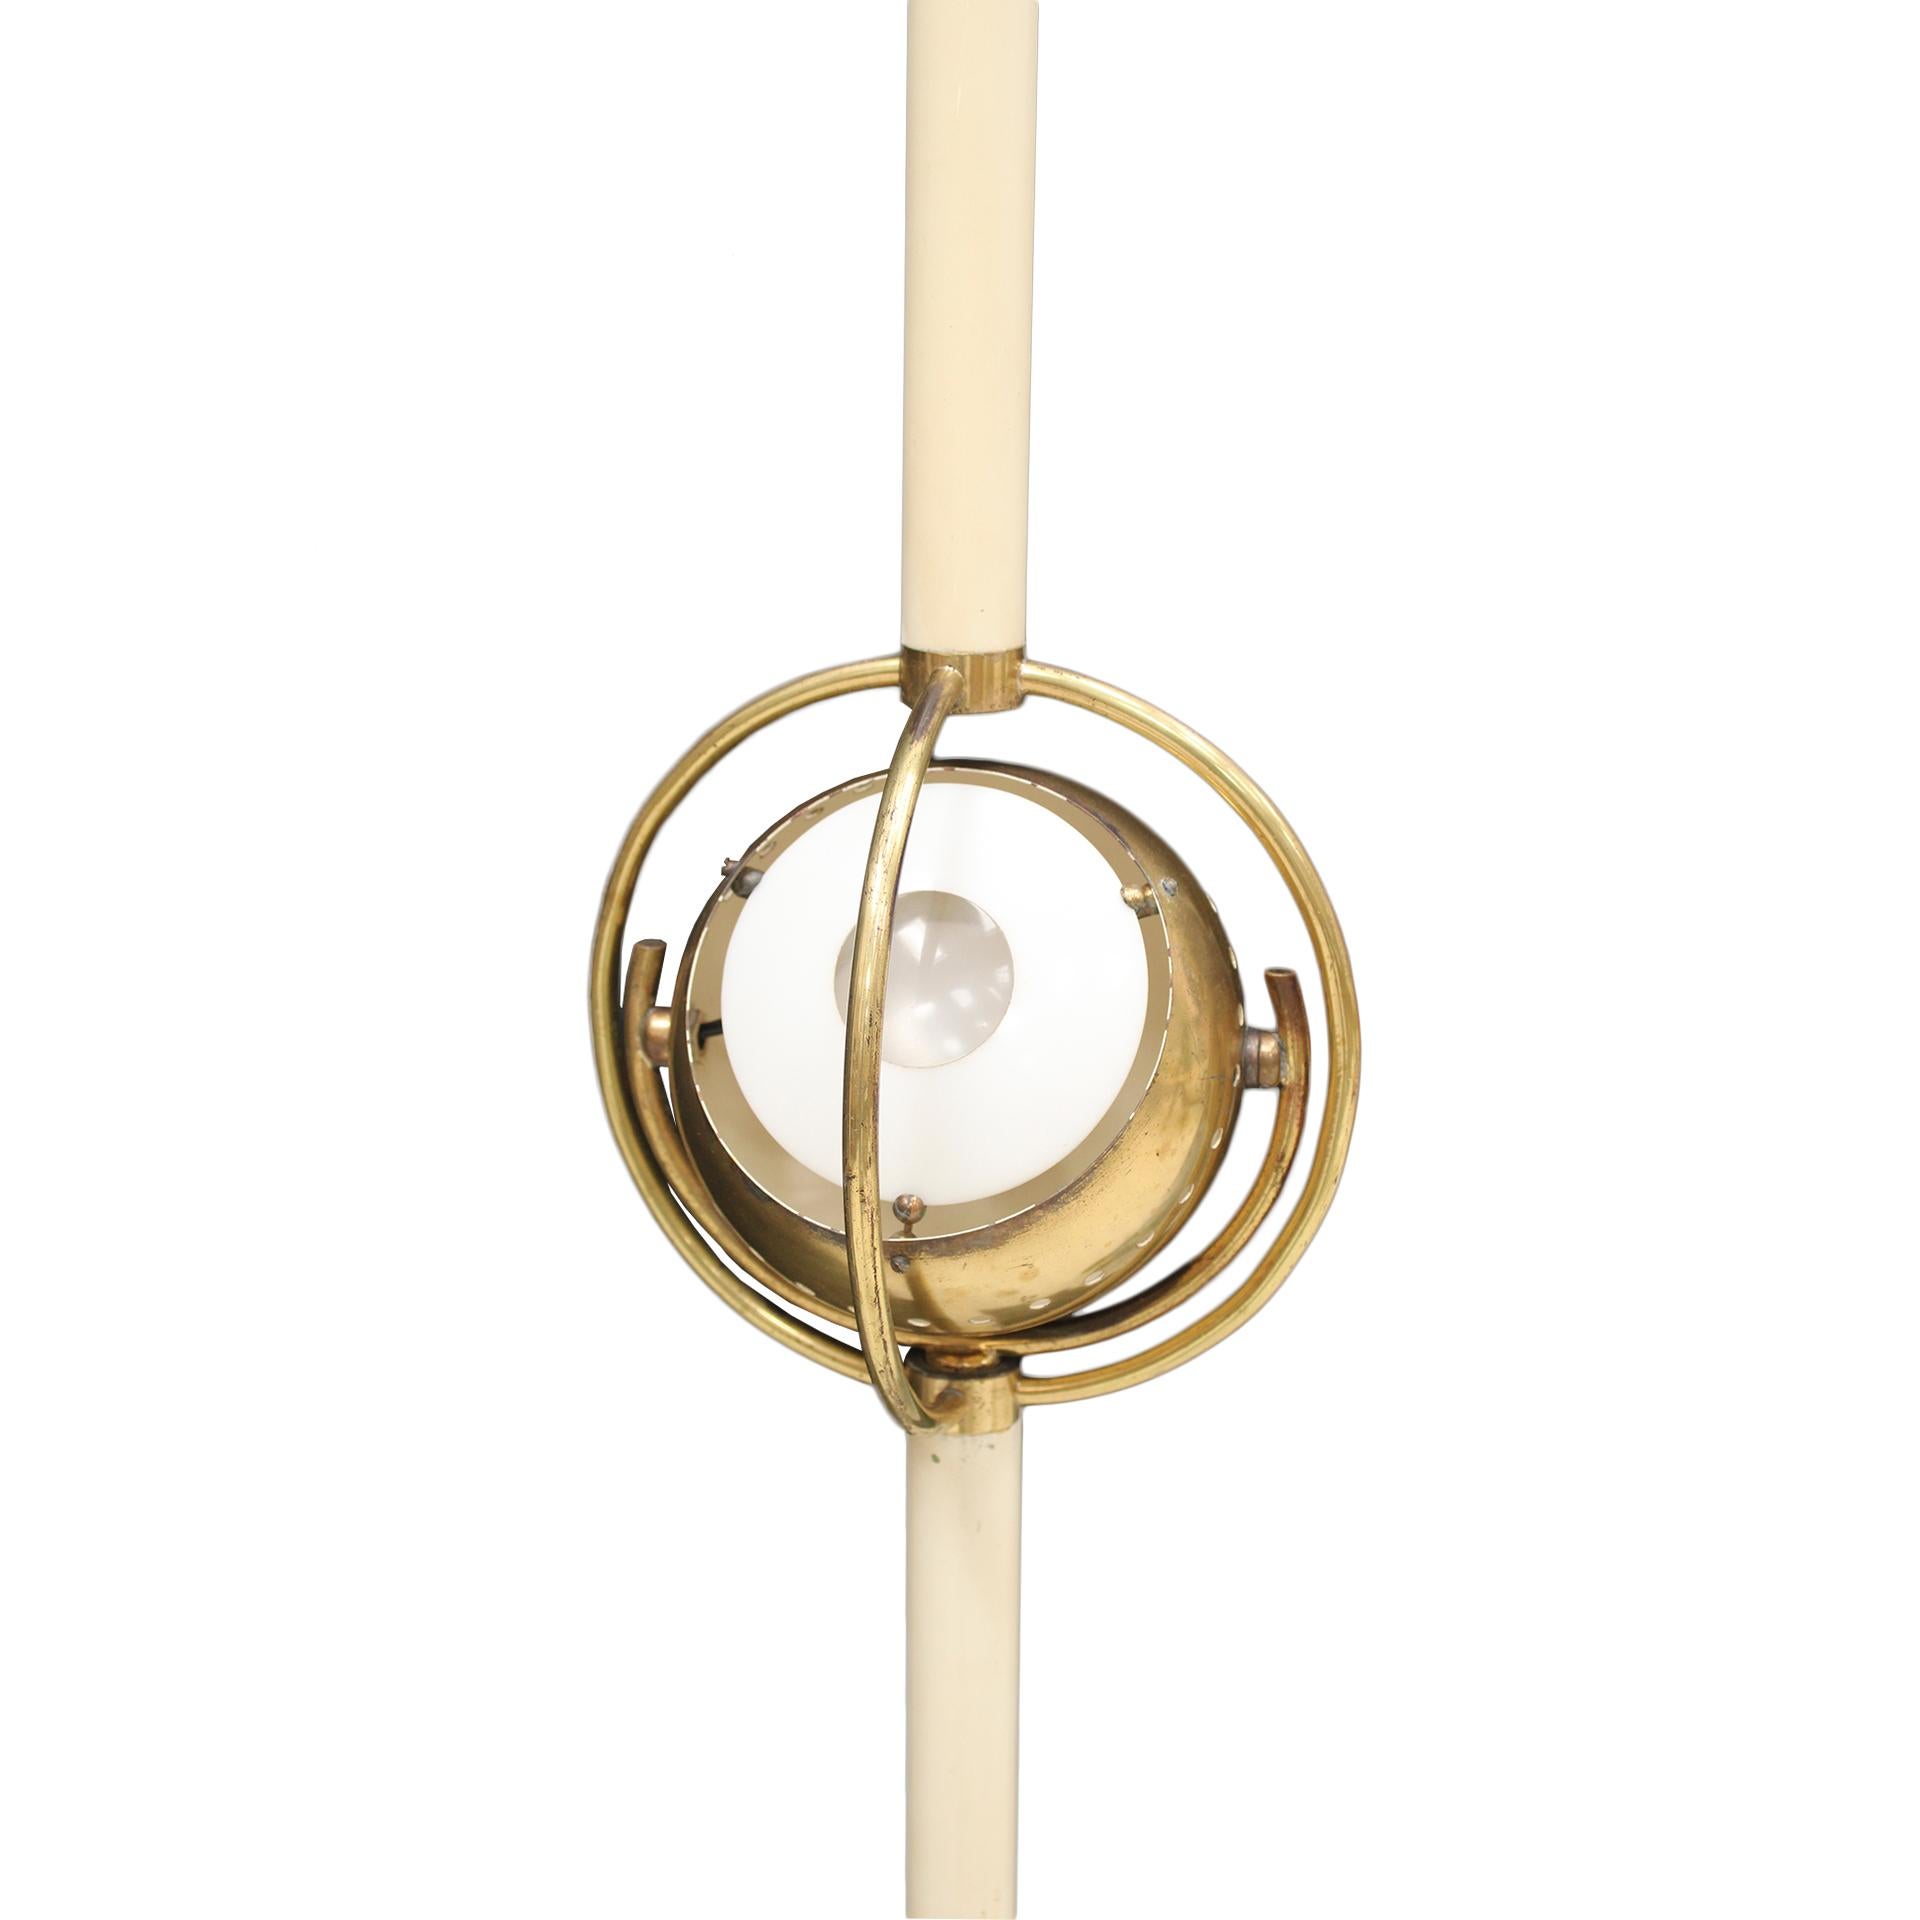 Die italienische Stehleuchte Polifemo, entworfen von Angelo Lelli, ist eine bemerkenswerte Leuchte aus der Mitte des Jahrhunderts, die den ikonischen Stil des Designers verkörpert. Lelli, bekannt für seine innovative Herangehensweise an modernes